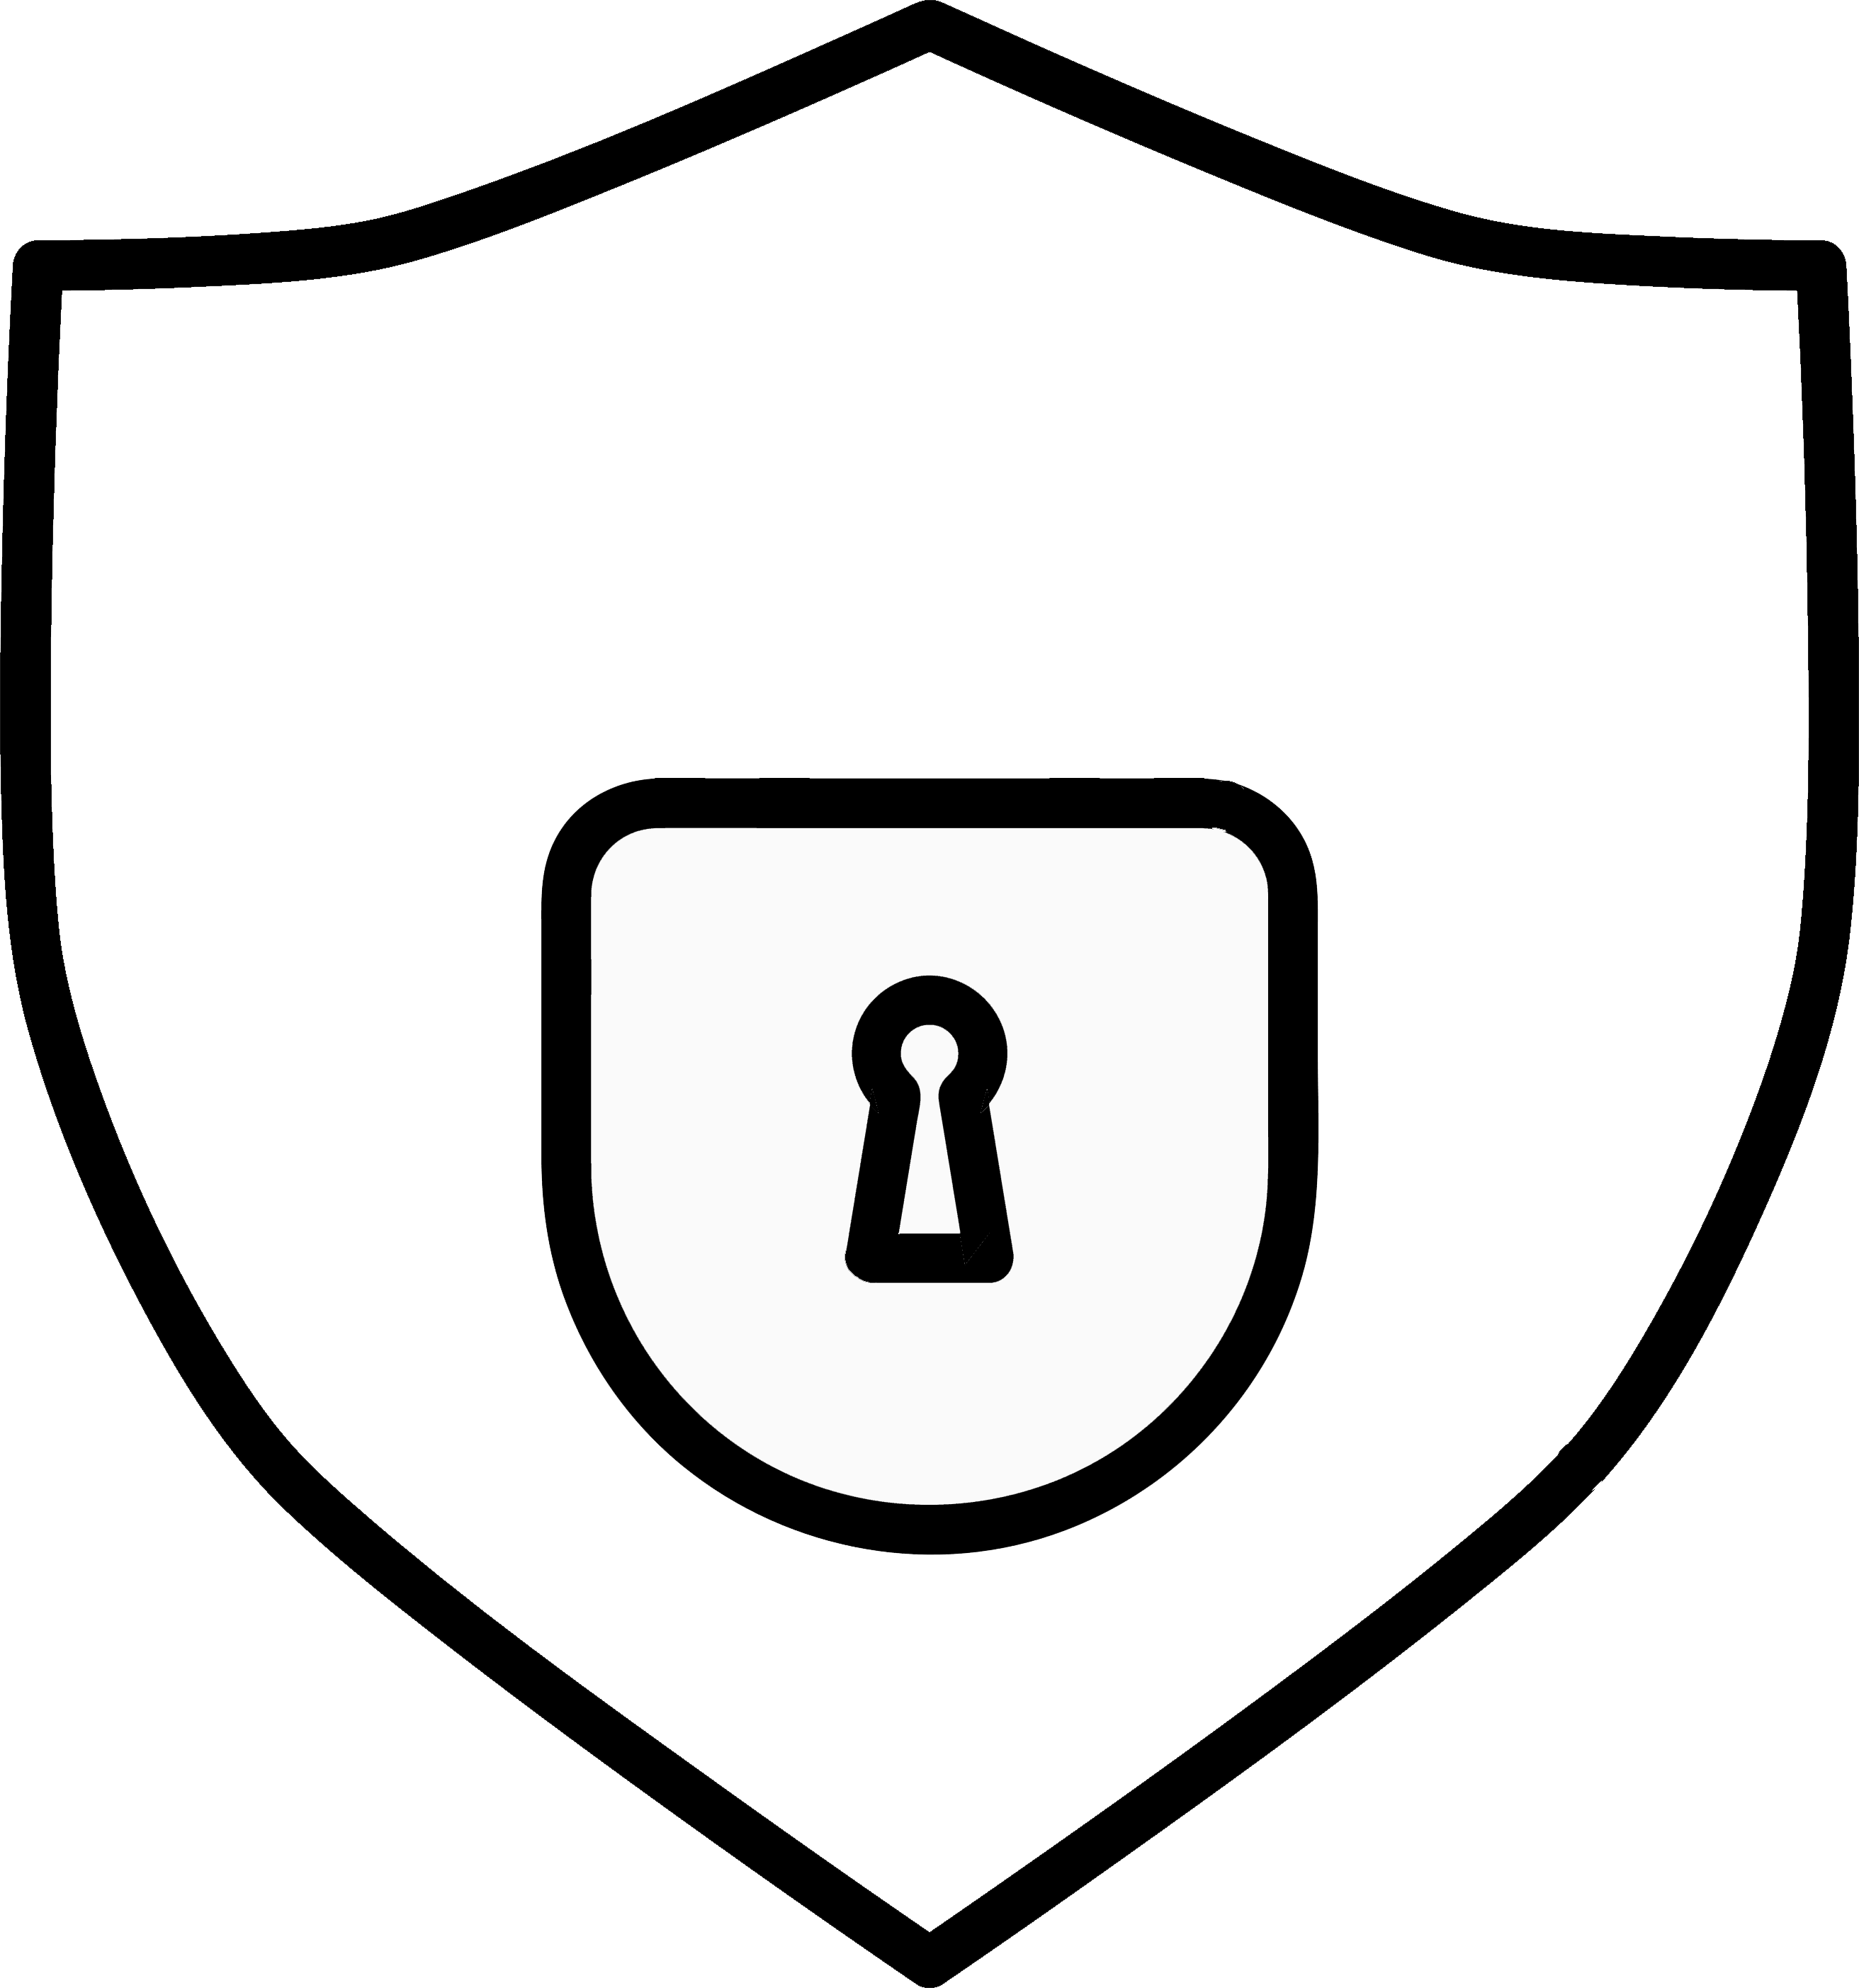 Rappresentazione grafica di uno scudo con un lucchetto come illustrazione di protezione e assicurazione.